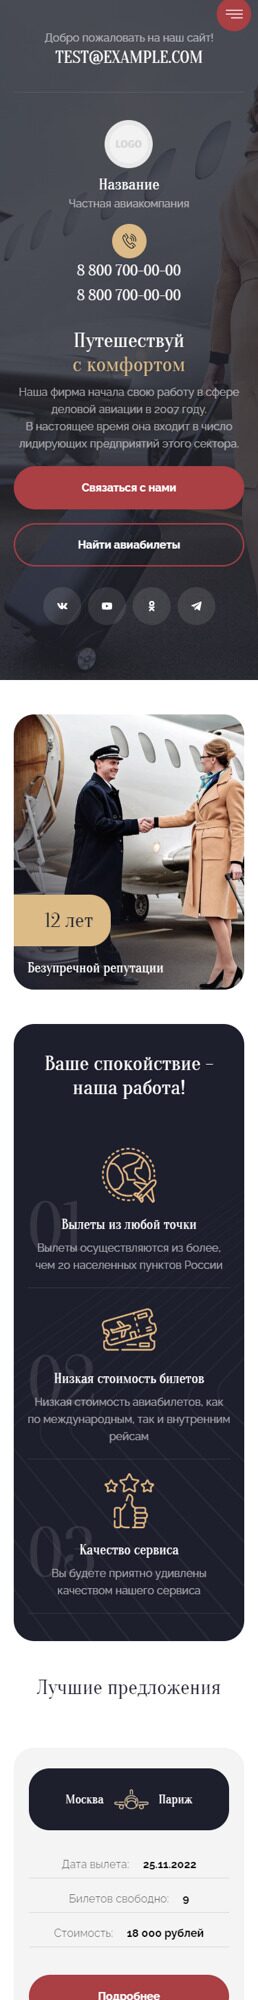 Готовый Сайт-Бизнес № 3939400 - Сайт для частной авиакомпании (Мобильная версия)